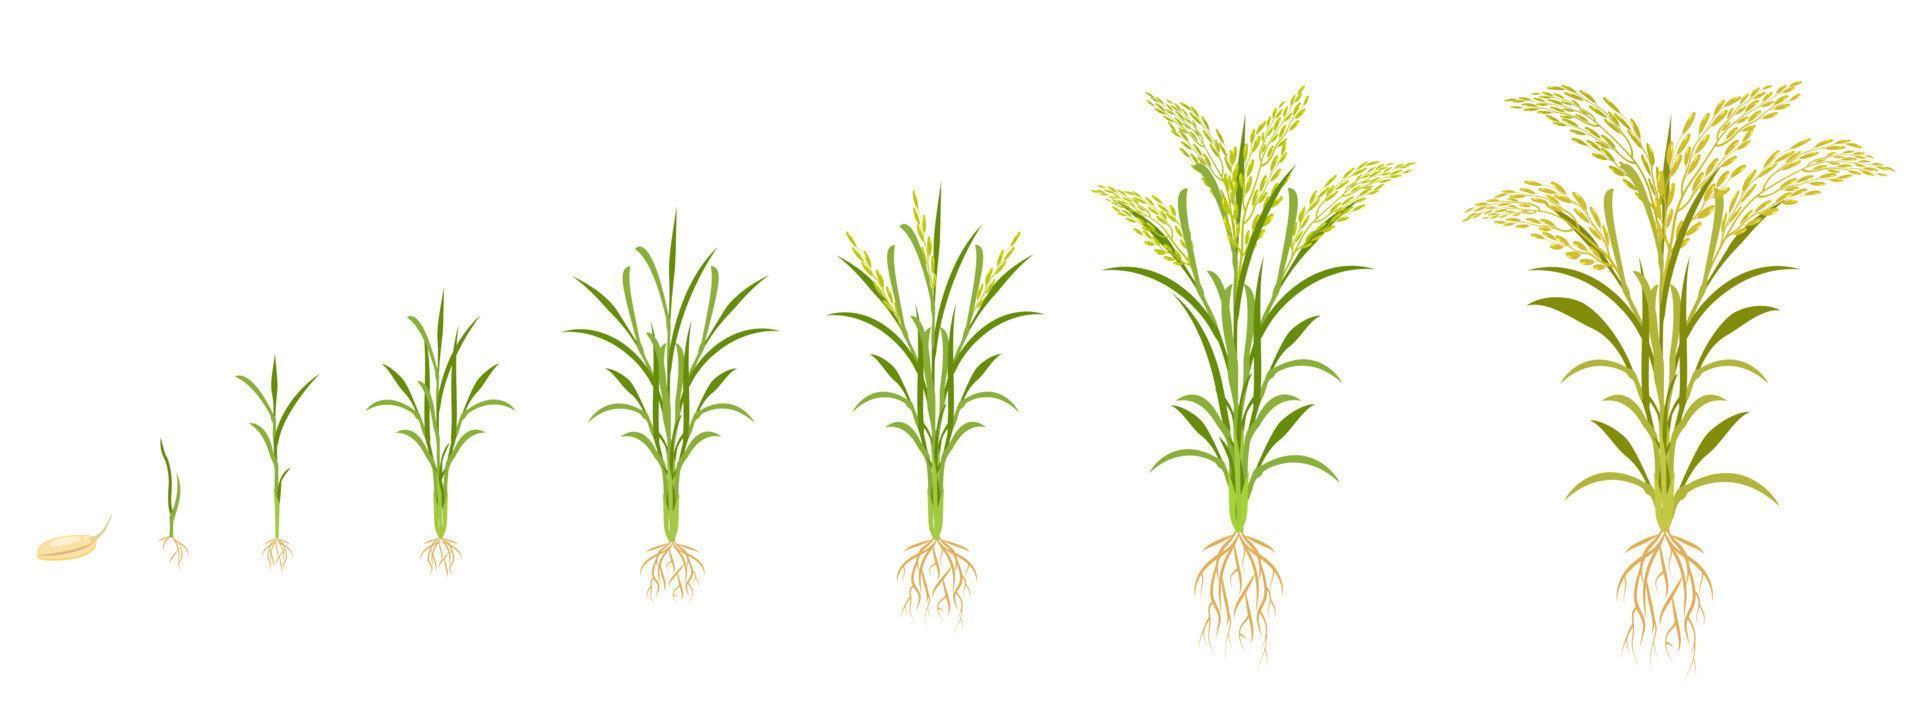 Reiswachstum in Stufen. Zyklus des Getreideanbaus. Infografik zur Pflanzenentwicklung vom Samen bis zur Ernte. vektor